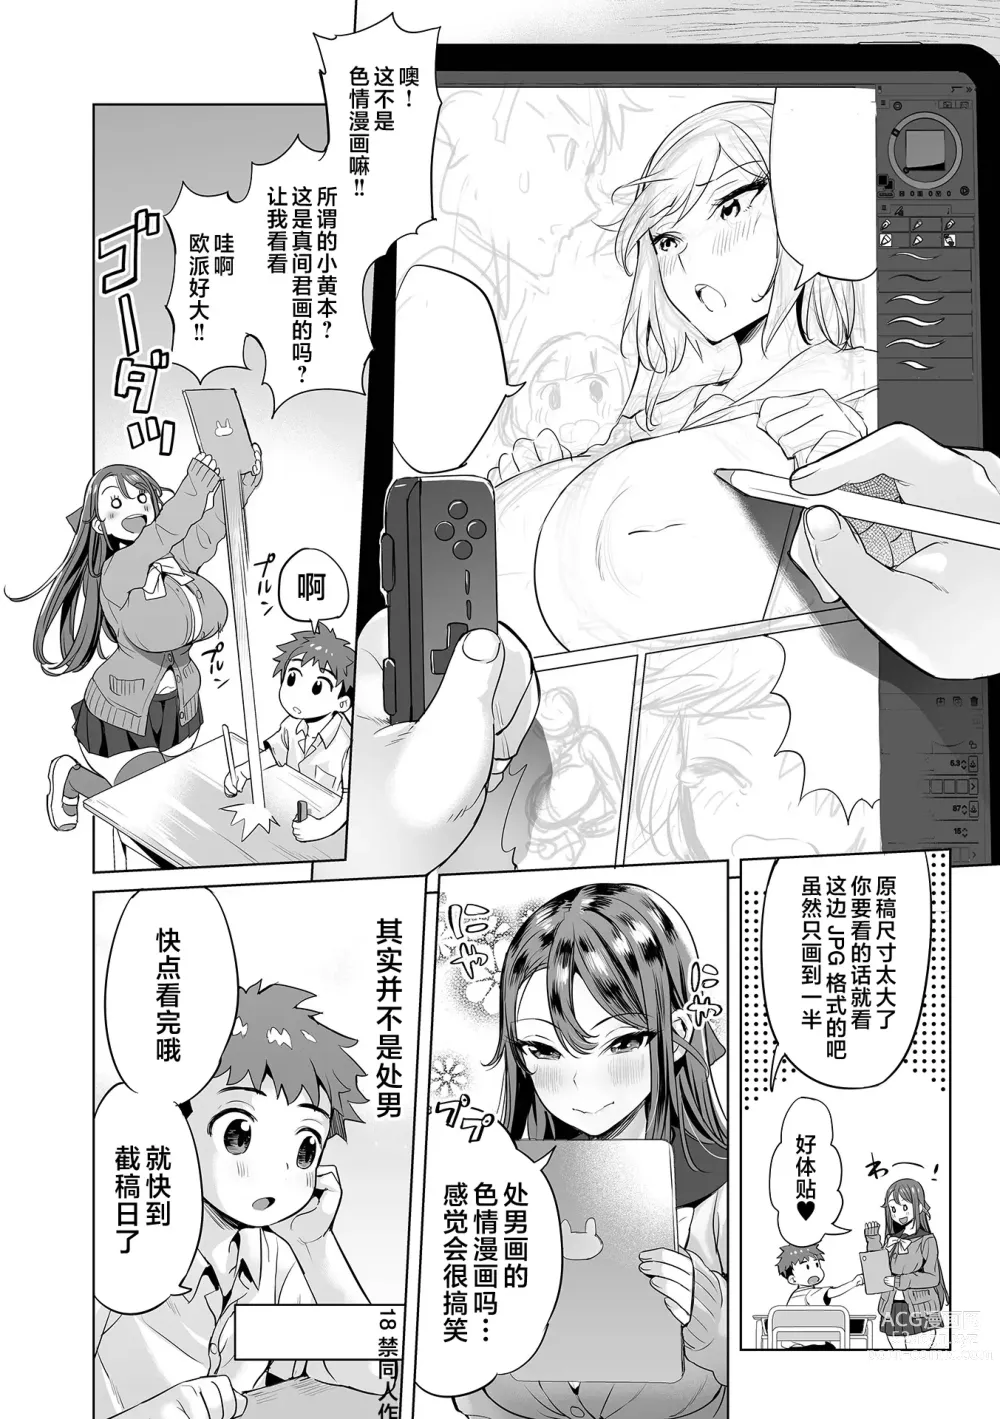 Page 3 of manga Mama Mi~ya#1--#4